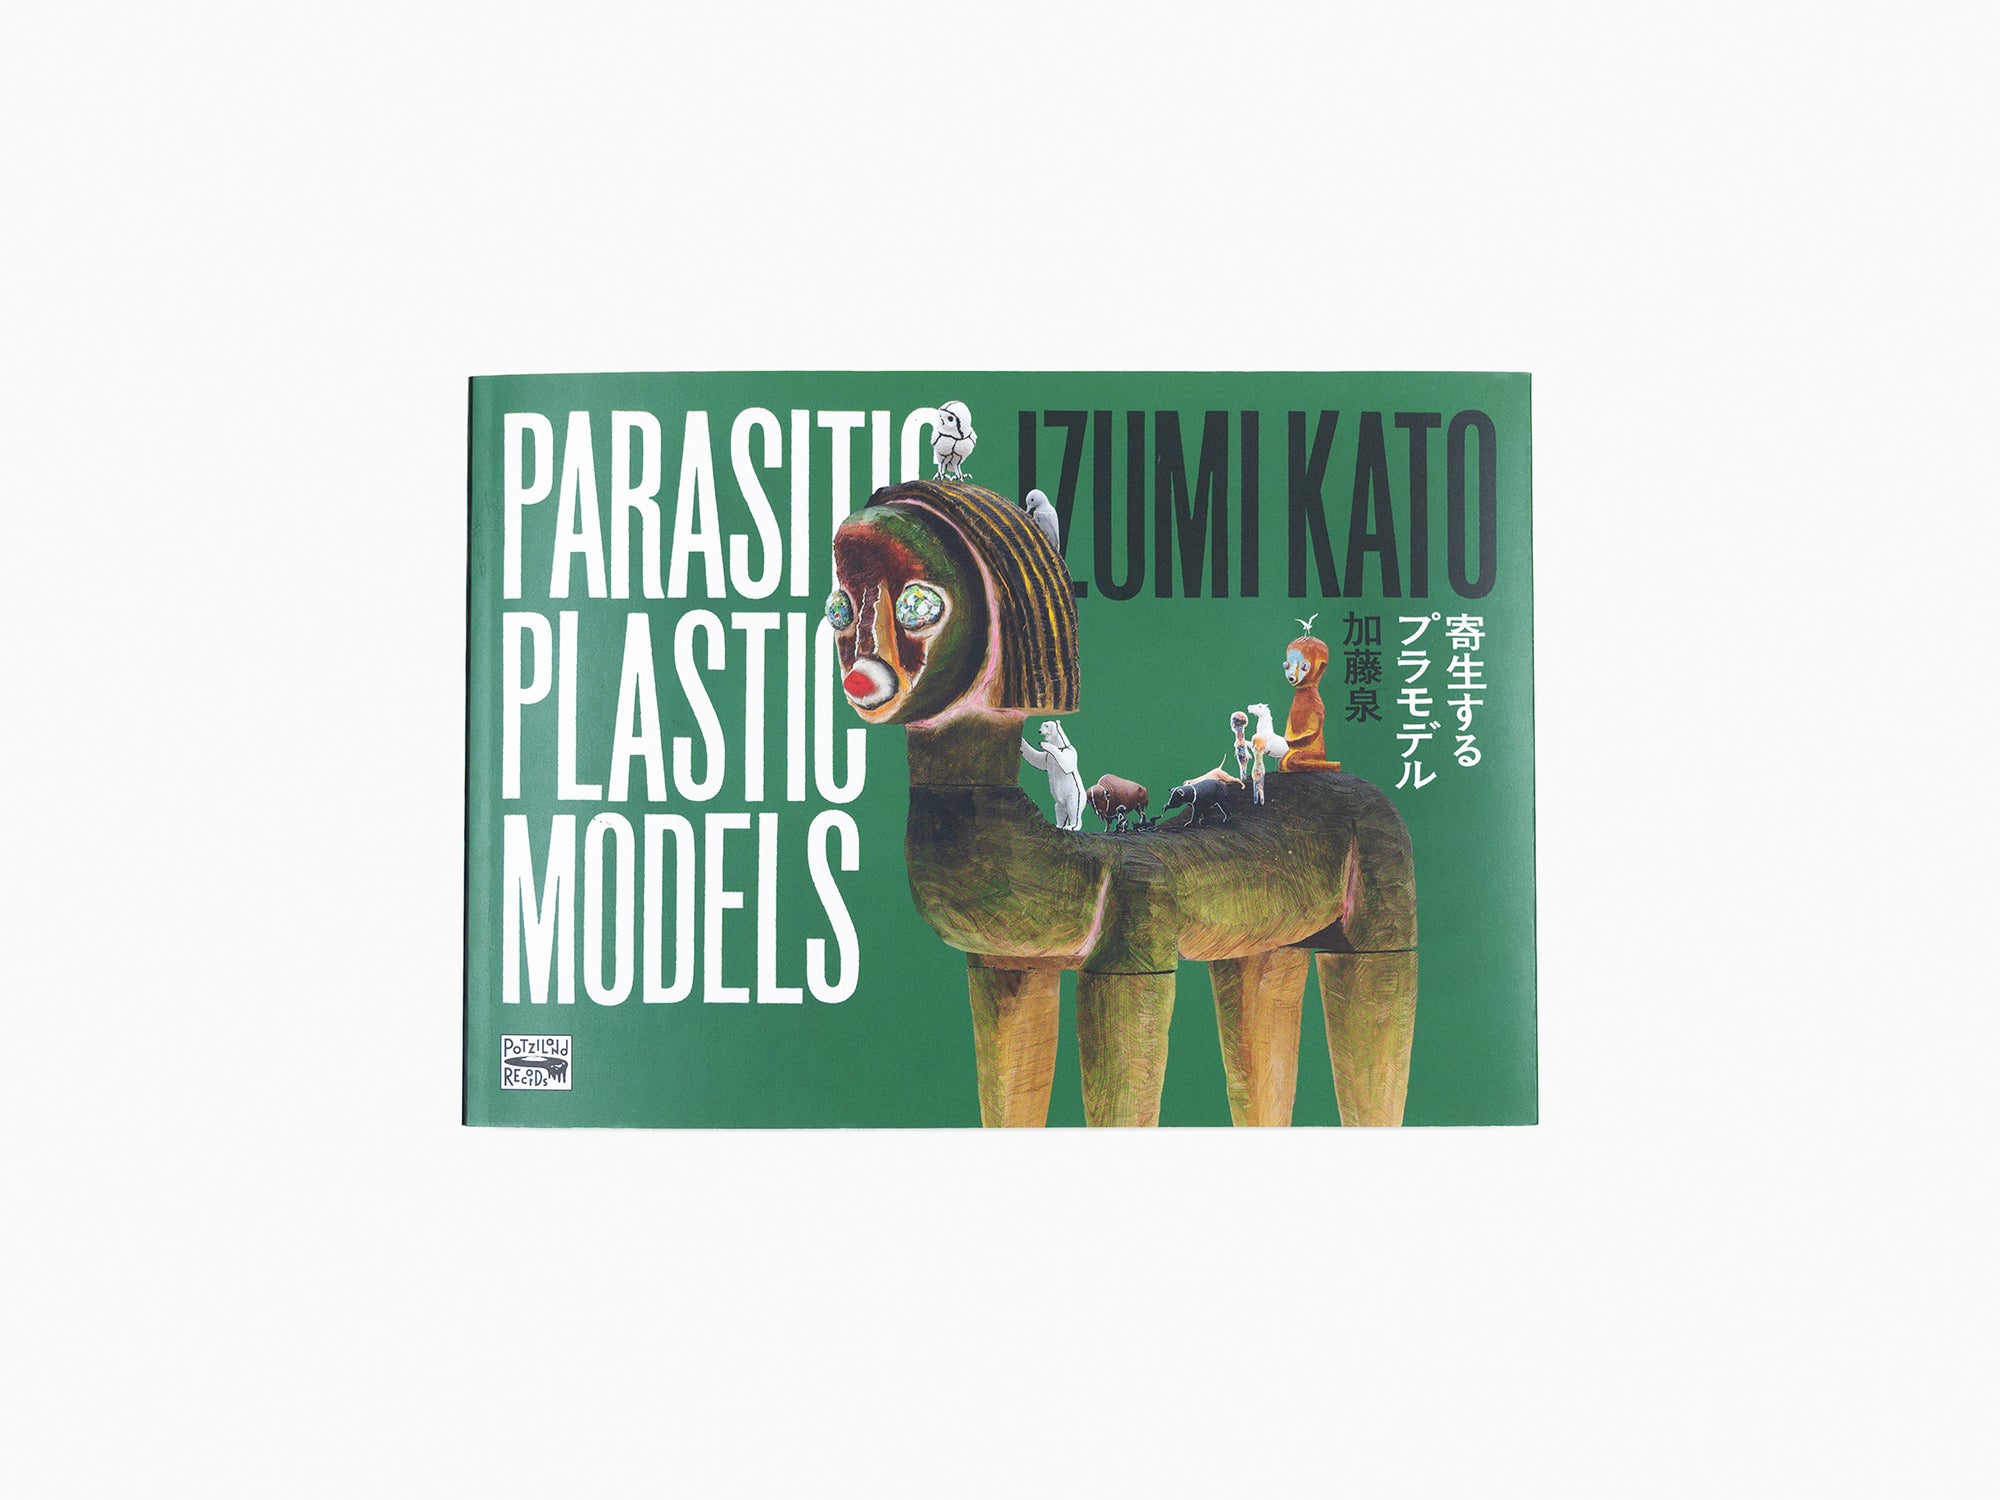 Izumi Kato - Modèles en plastique parasites